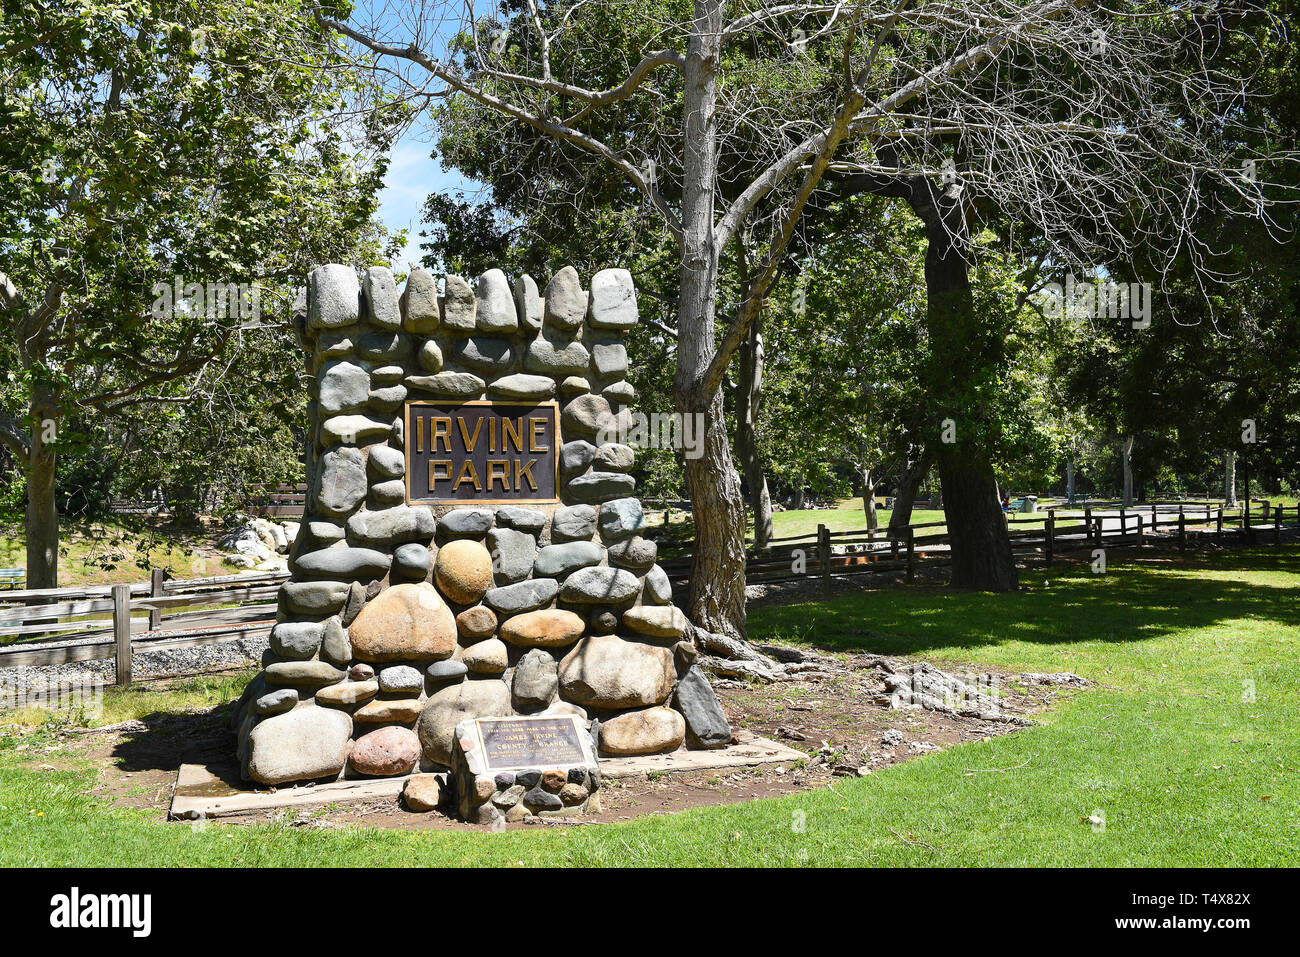 ORANGE, CALIFORNIA - APRIL 18, 2019: Stone Dedication Marker at Irvine Regional Park in Orange County California. Stock Photo